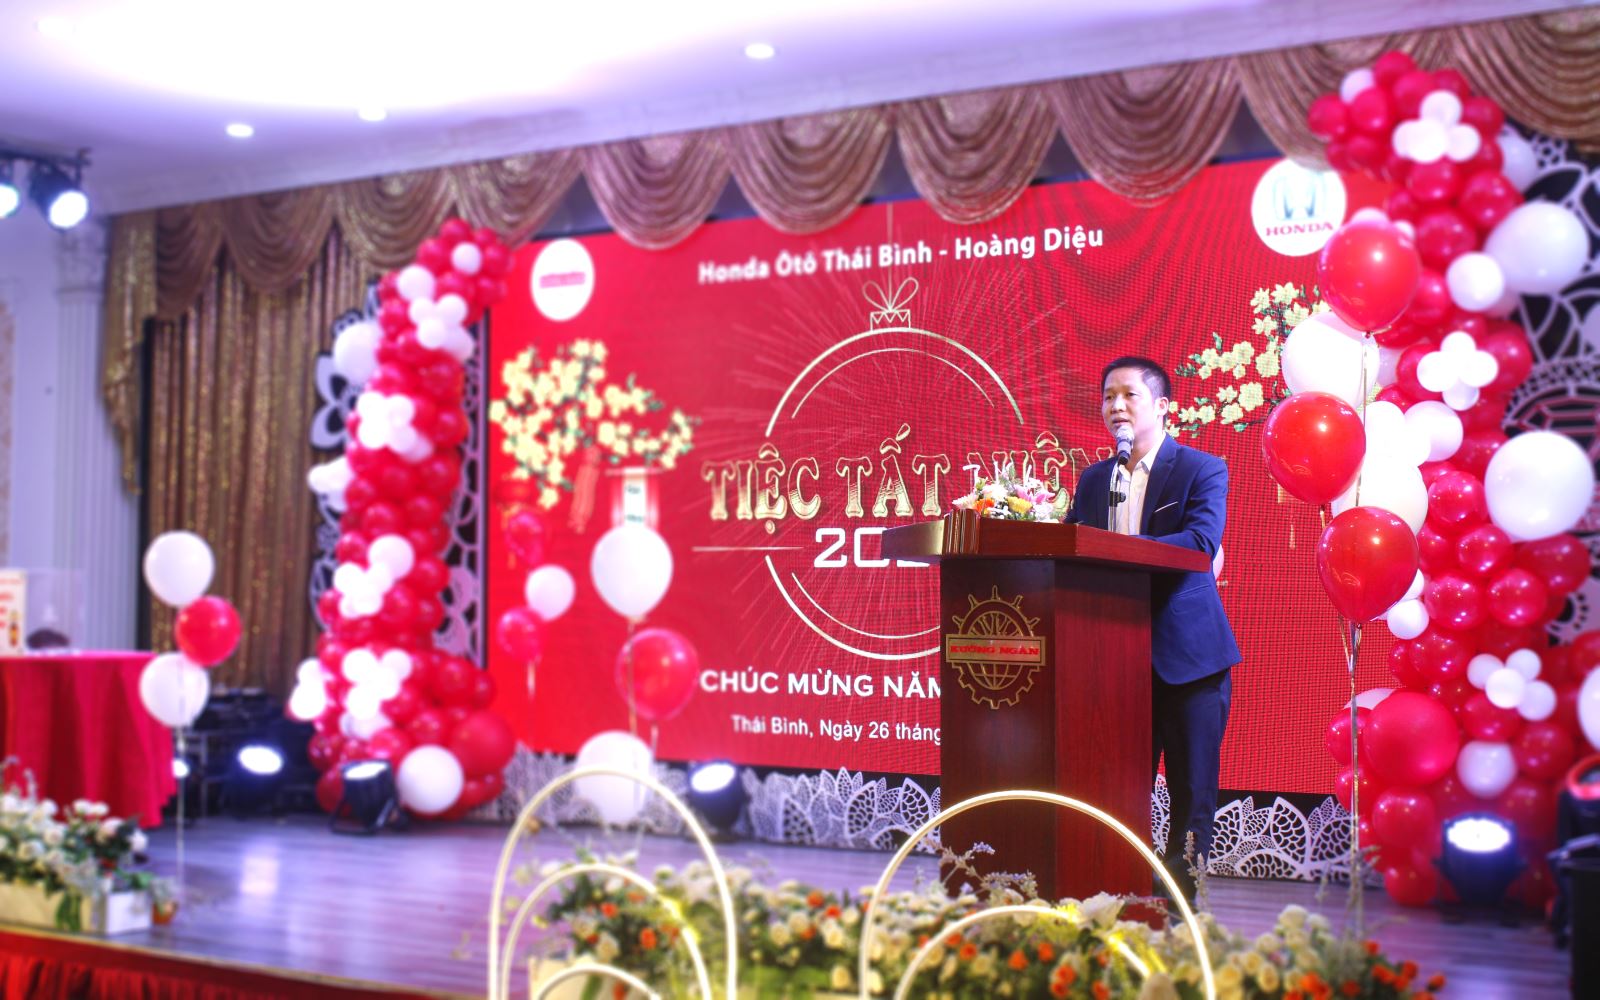 Ông Trần Mạnh Giỏi - Giám đốc Đại lý Honda Ôtô Thái Bình - Hoàng Diệu phát biểu tại buổi tiệc.